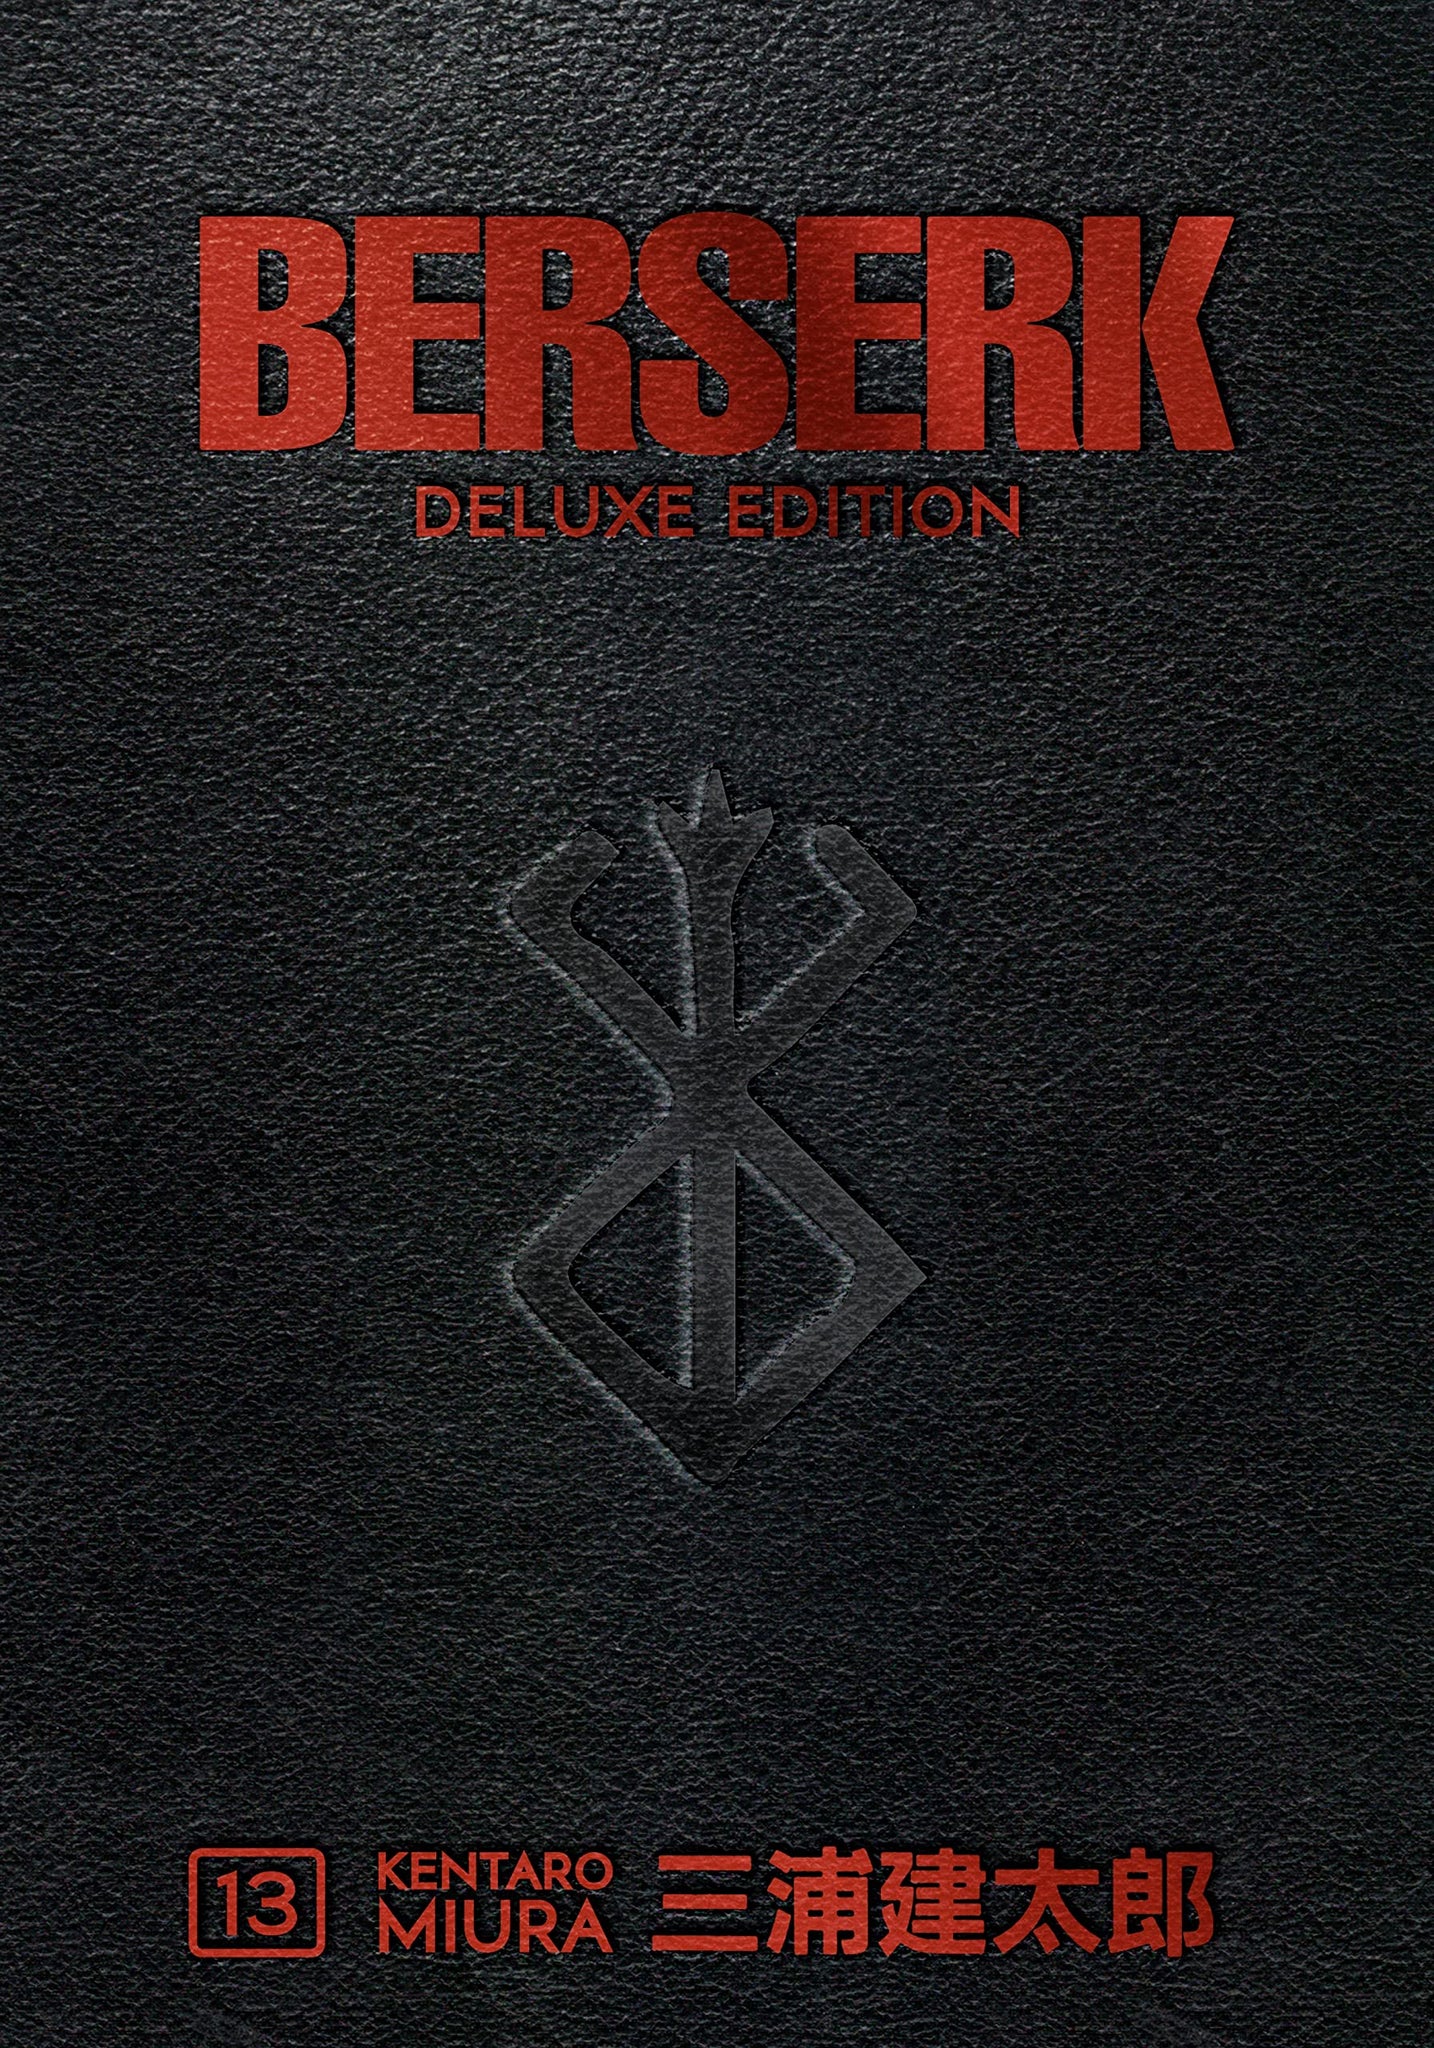 Berserk Deluxe Volume 13 (Berserk Deluxe Edition #13) - Hardback